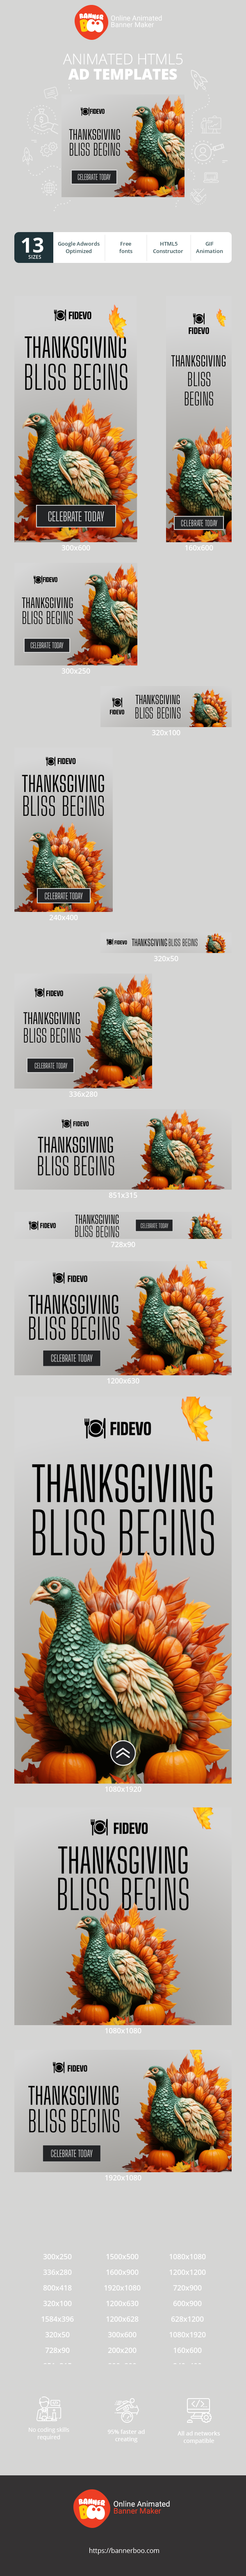 Шаблон рекламного банера — Thanksgiving Bliss Begins — Thanksgiving Day